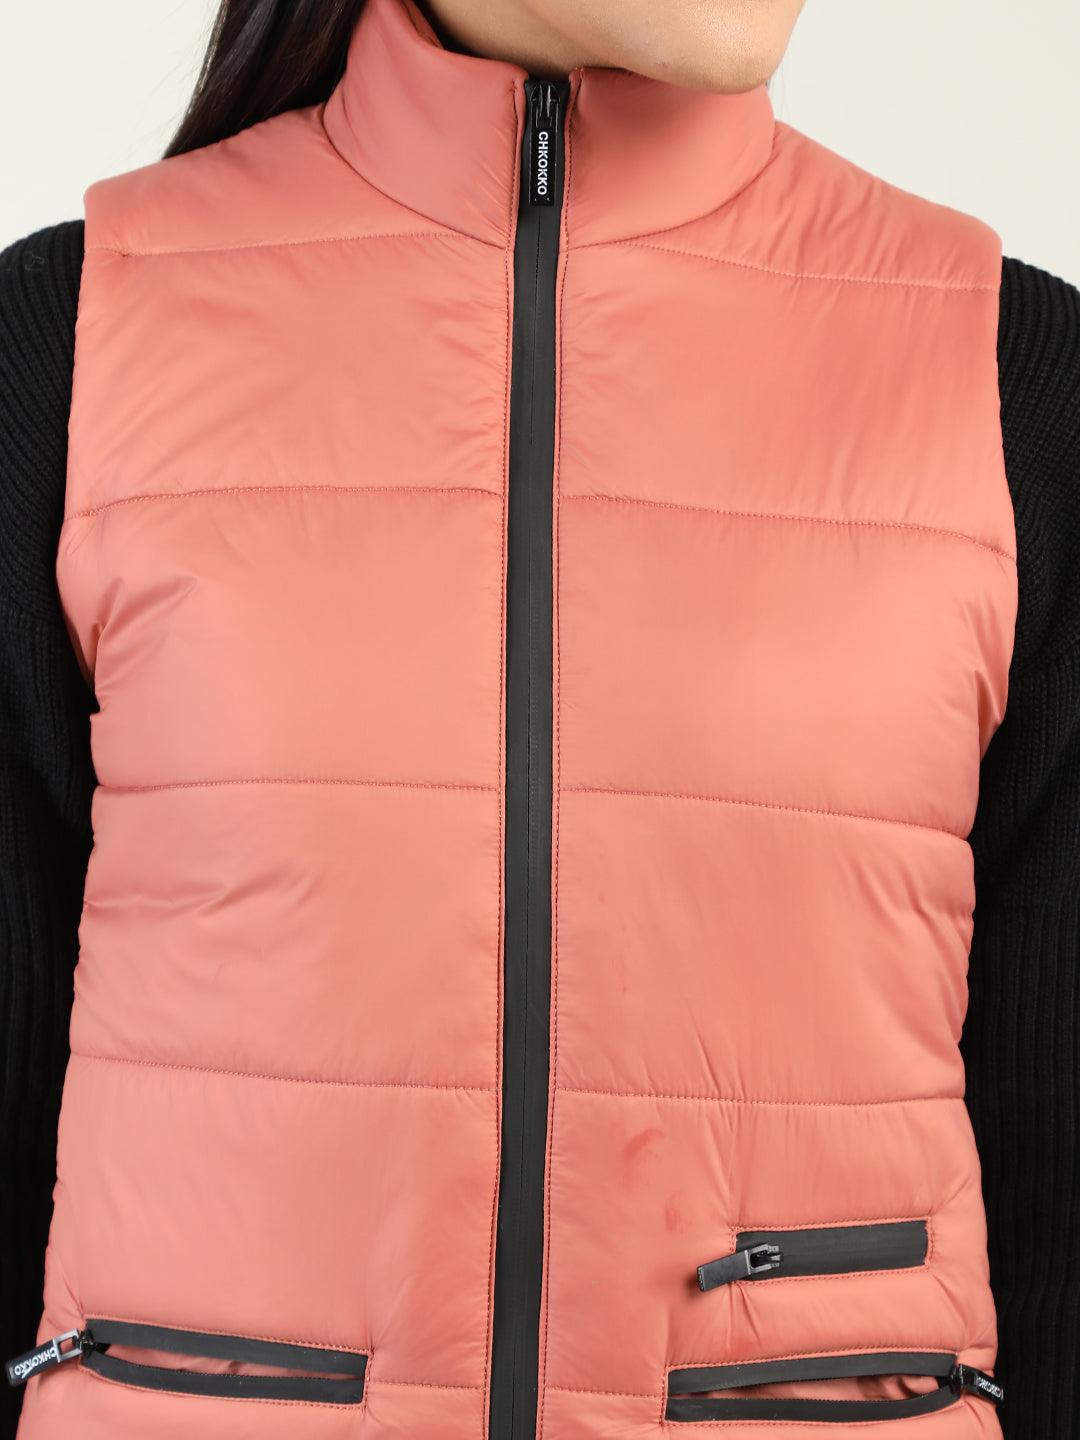 Women Lightweight Outdoor Puffer Jacket | CHKOKKO - Chkokko